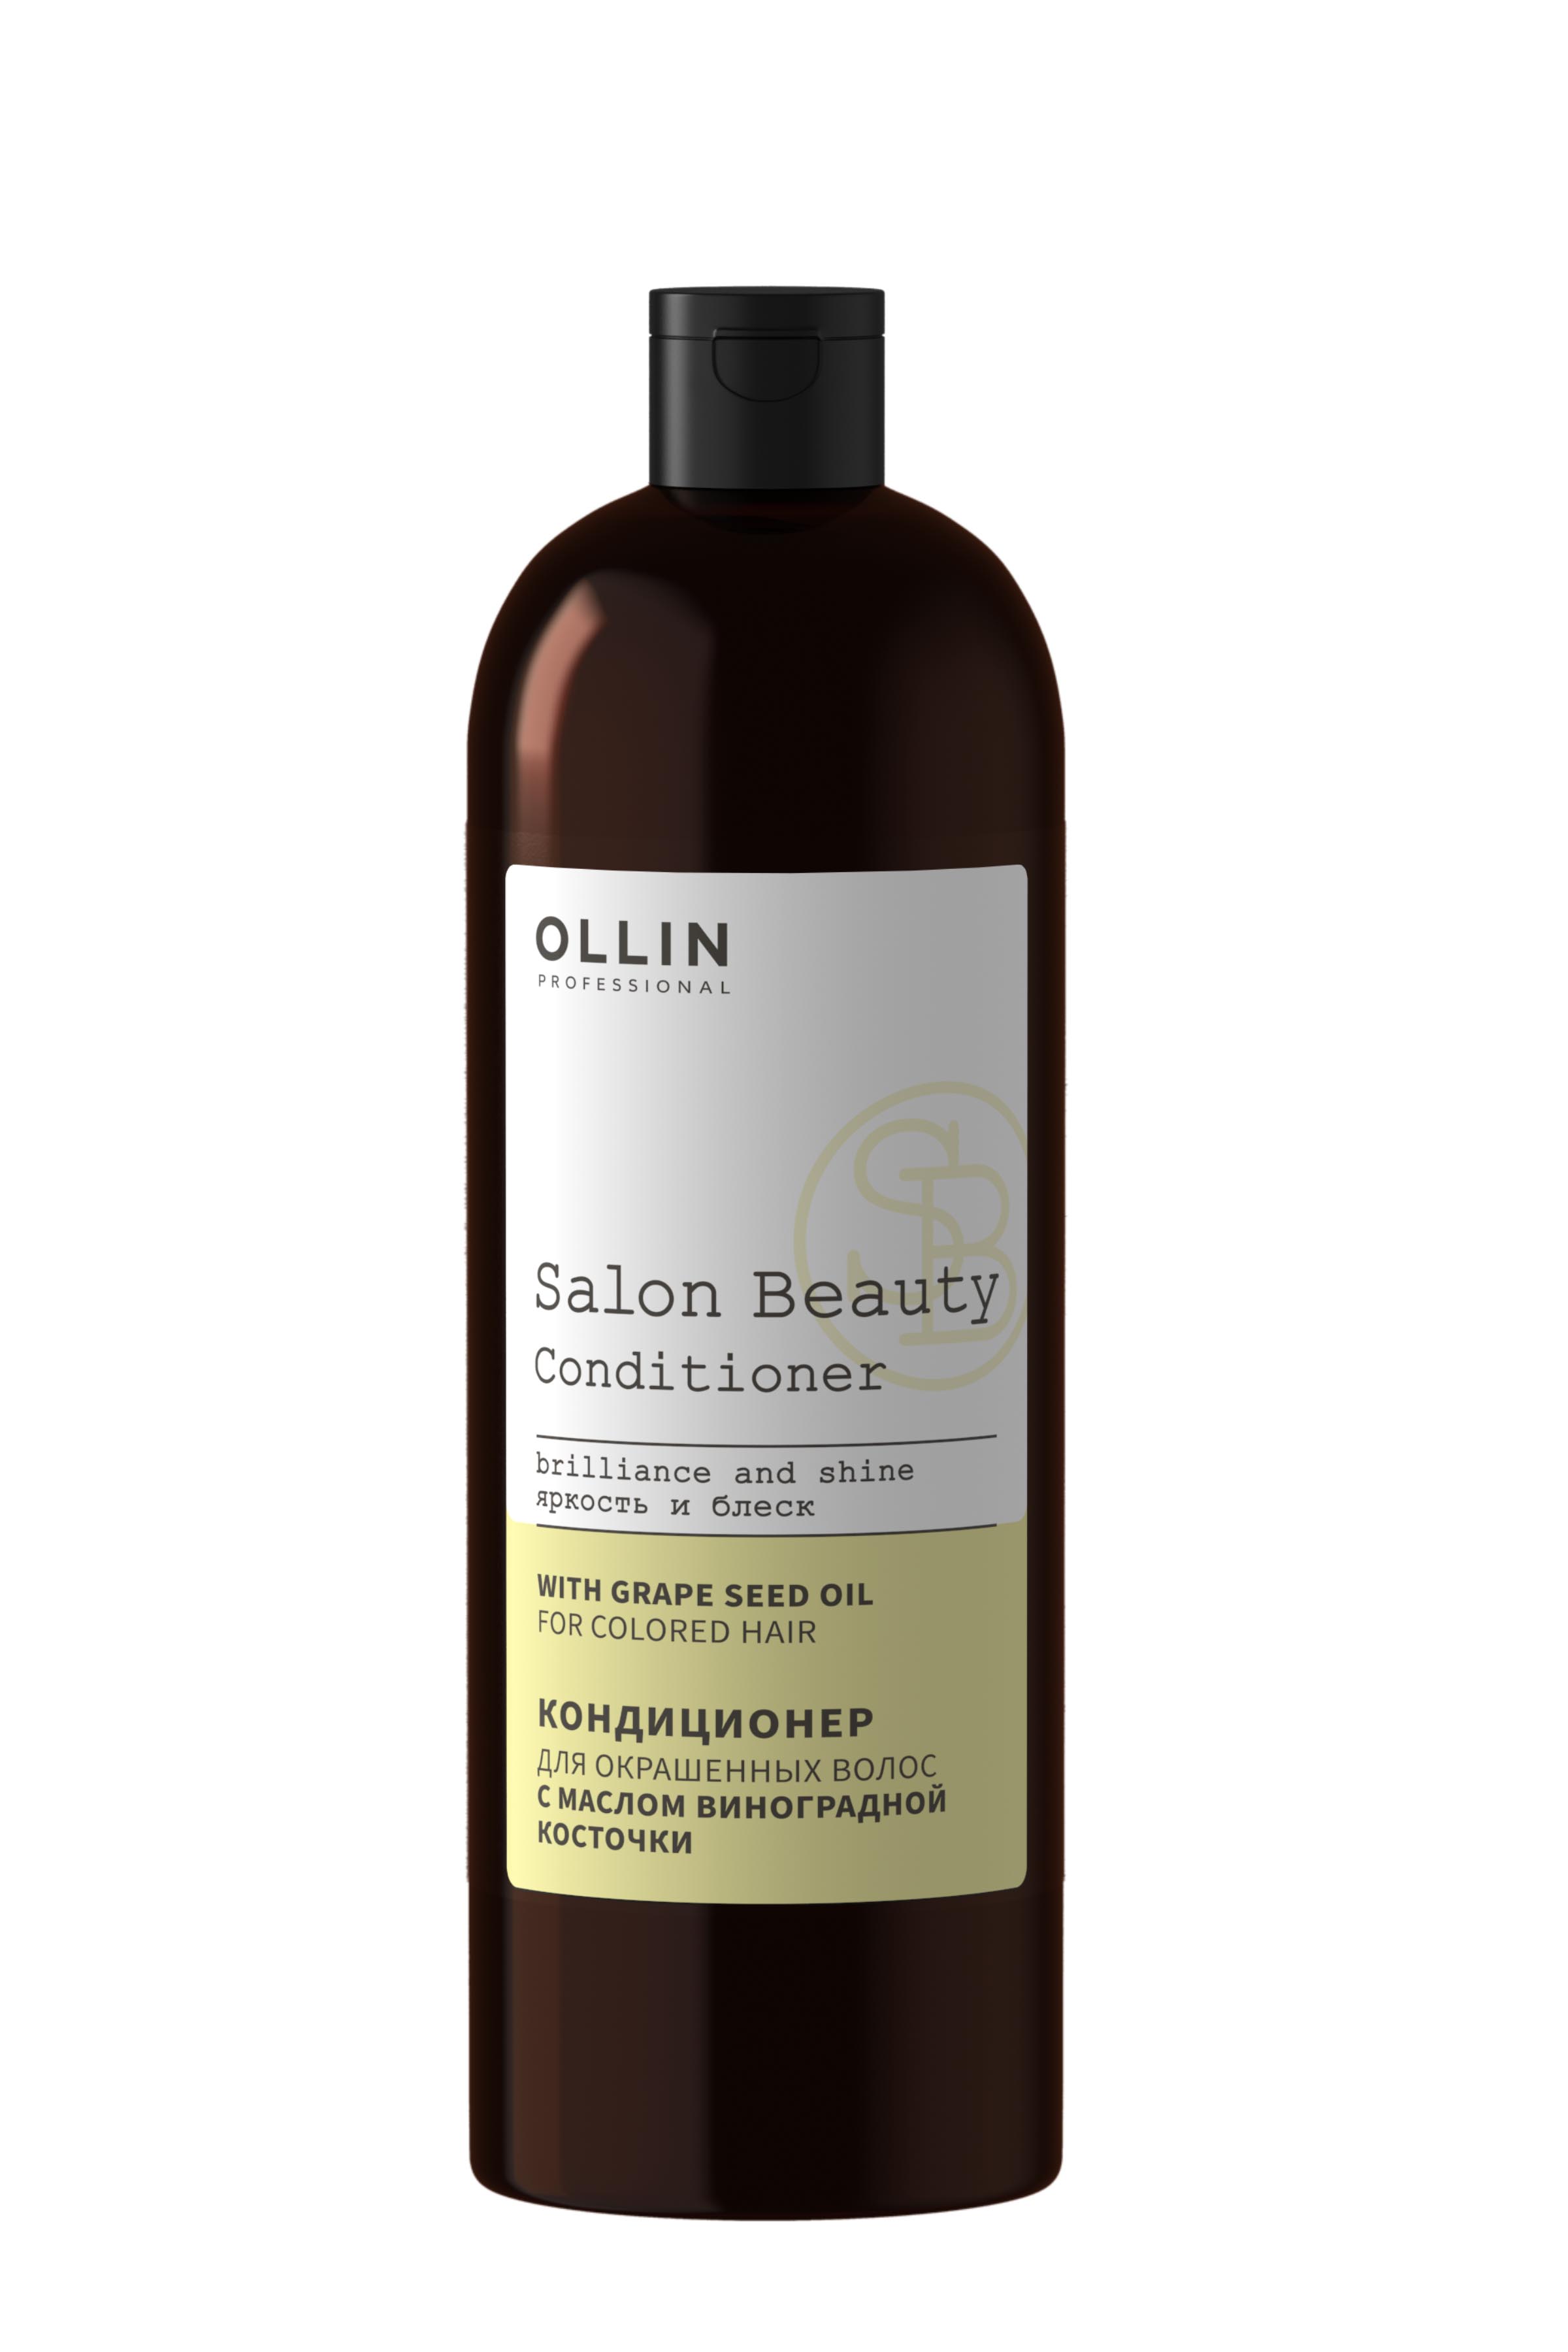 Кондиционер для окрашенных волос с маслом виноградной косточки OLLIN SALON BEAUTY, 1000мл